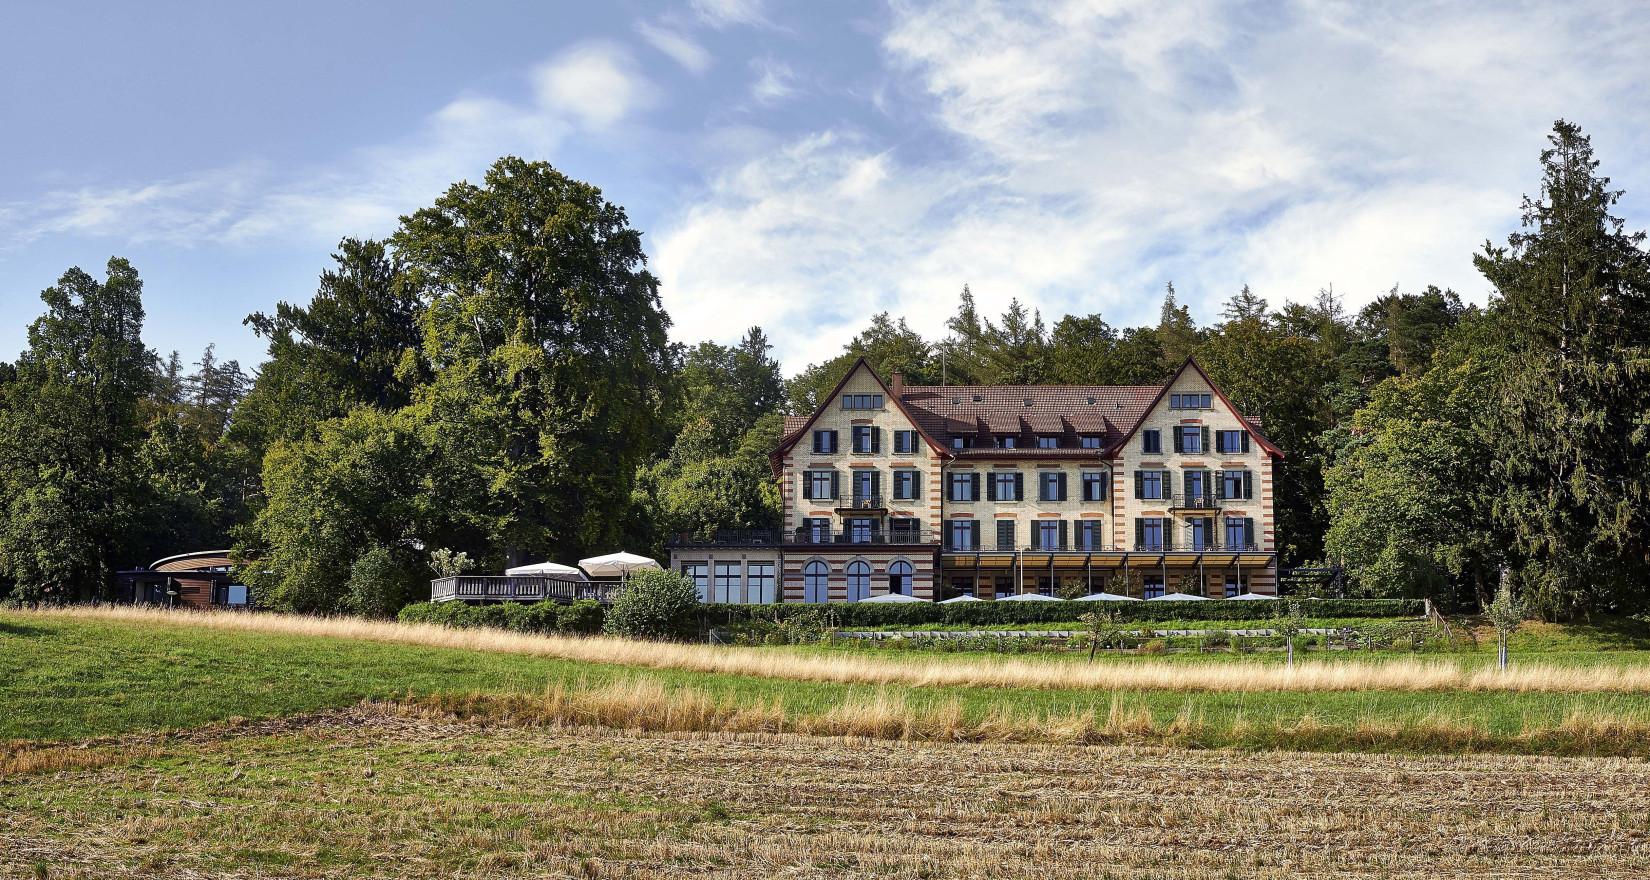 Sorell Hotel Zürichberg von aussen, Ansicht mit opulenten Hochstammobstbäumen dahinter und grünen Wiesen davor